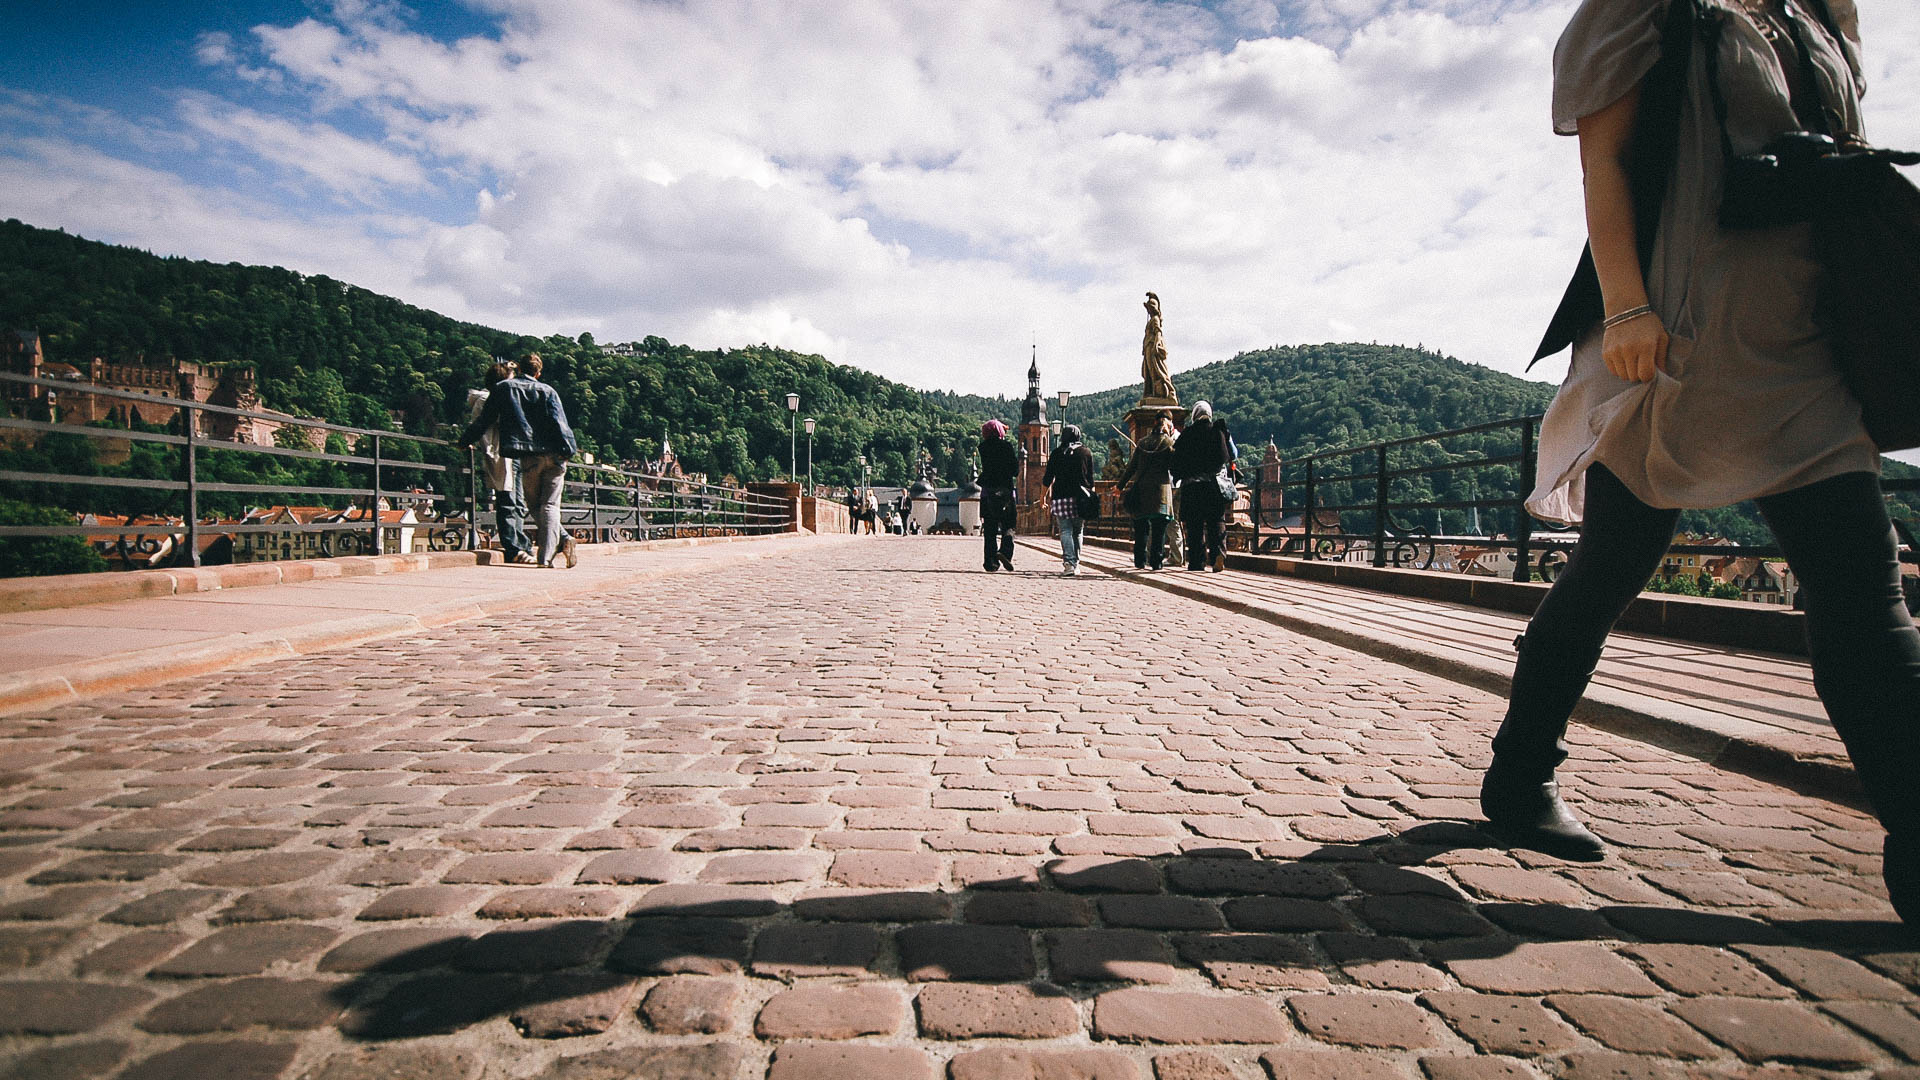 Heidelberg, Germany|klyuen travel photography